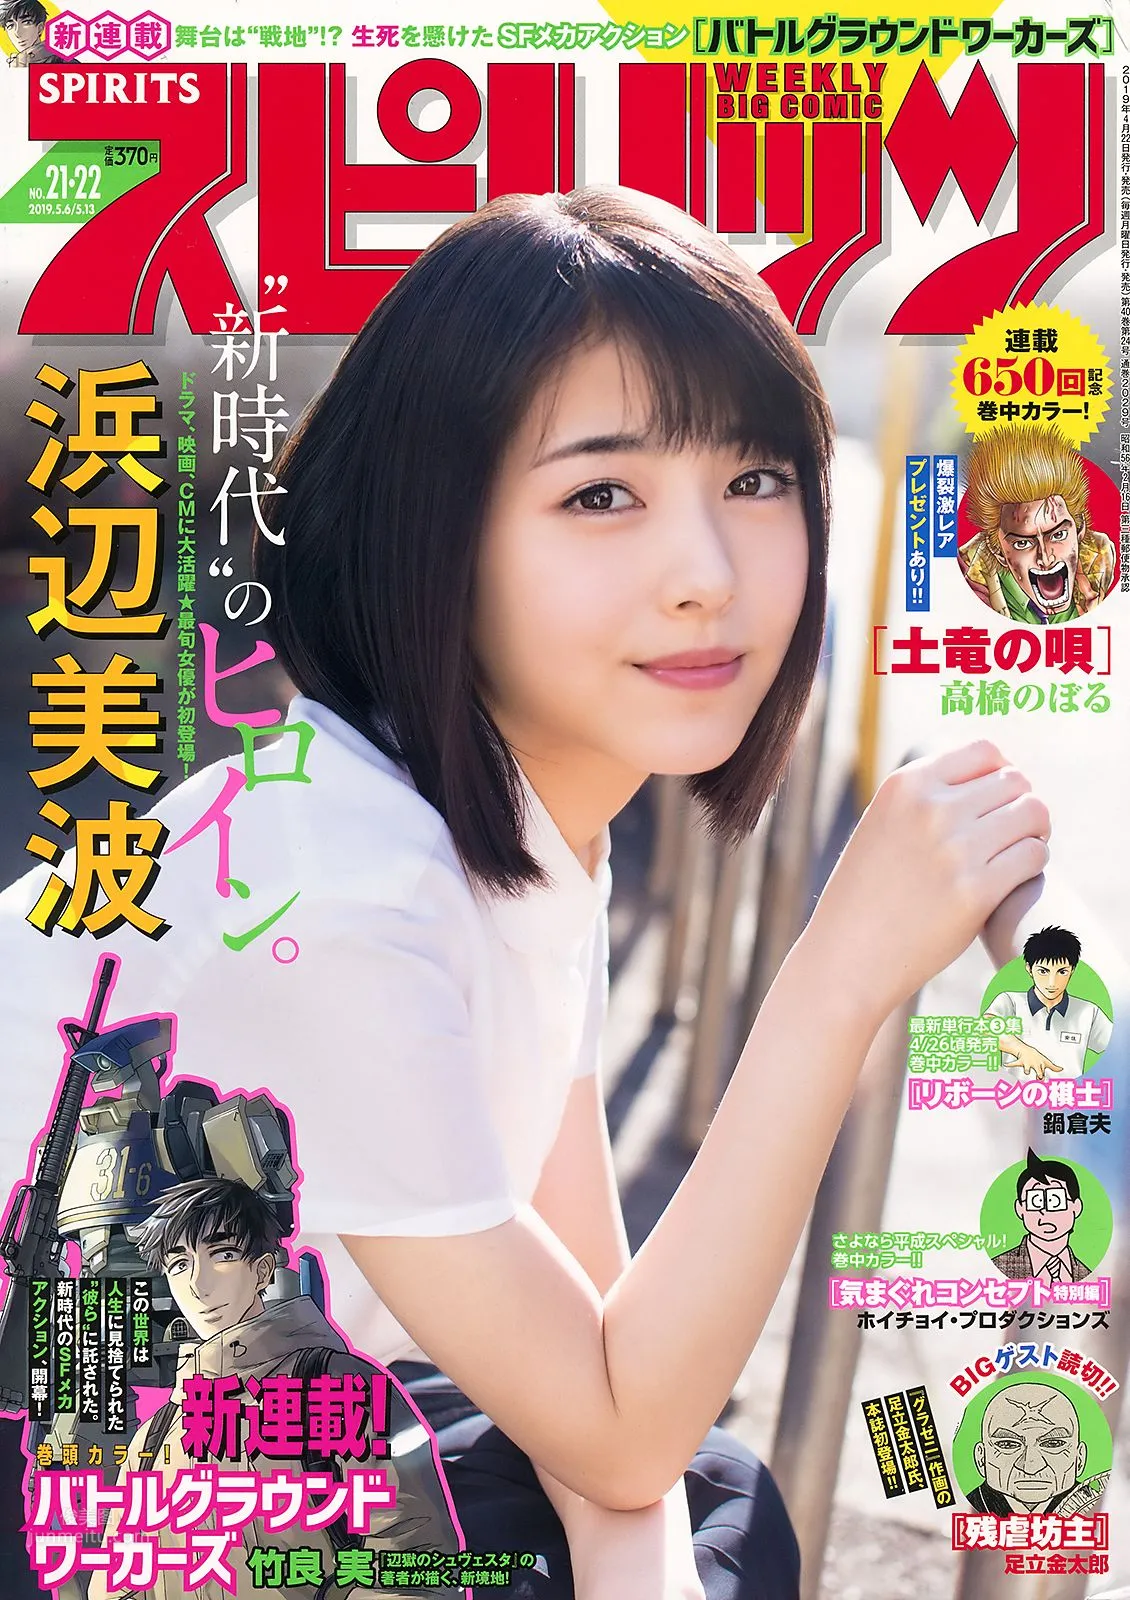 浜辺美波, Hamabe Minami - Young Magazine, Weekly SPA!, Big Comic Spirits, 2019_21